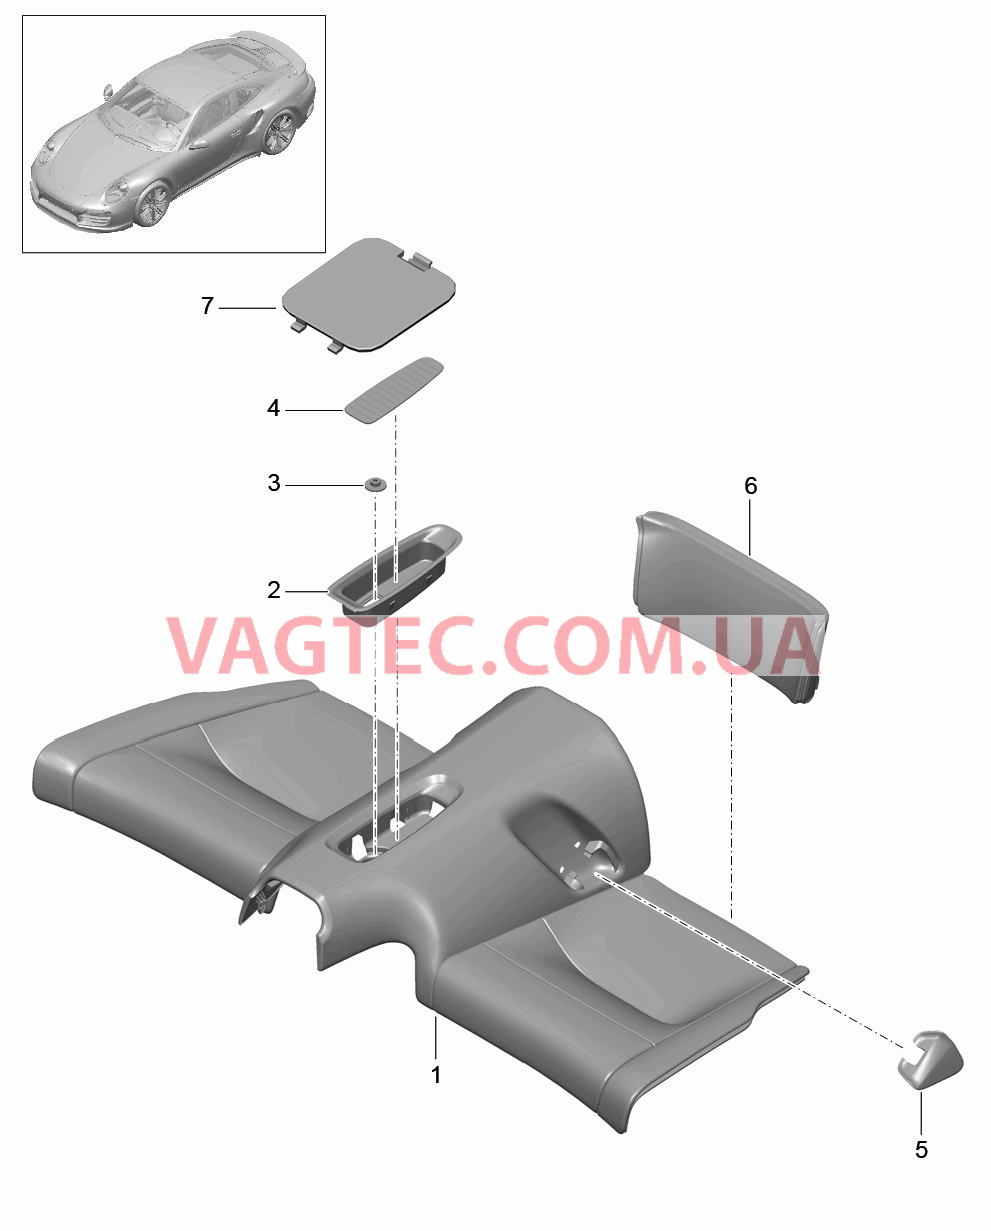 817-050 Подушка заднего сиденья, Крепление
						
						COUPE для PORSCHE Porsche991Turbo 2014-2017